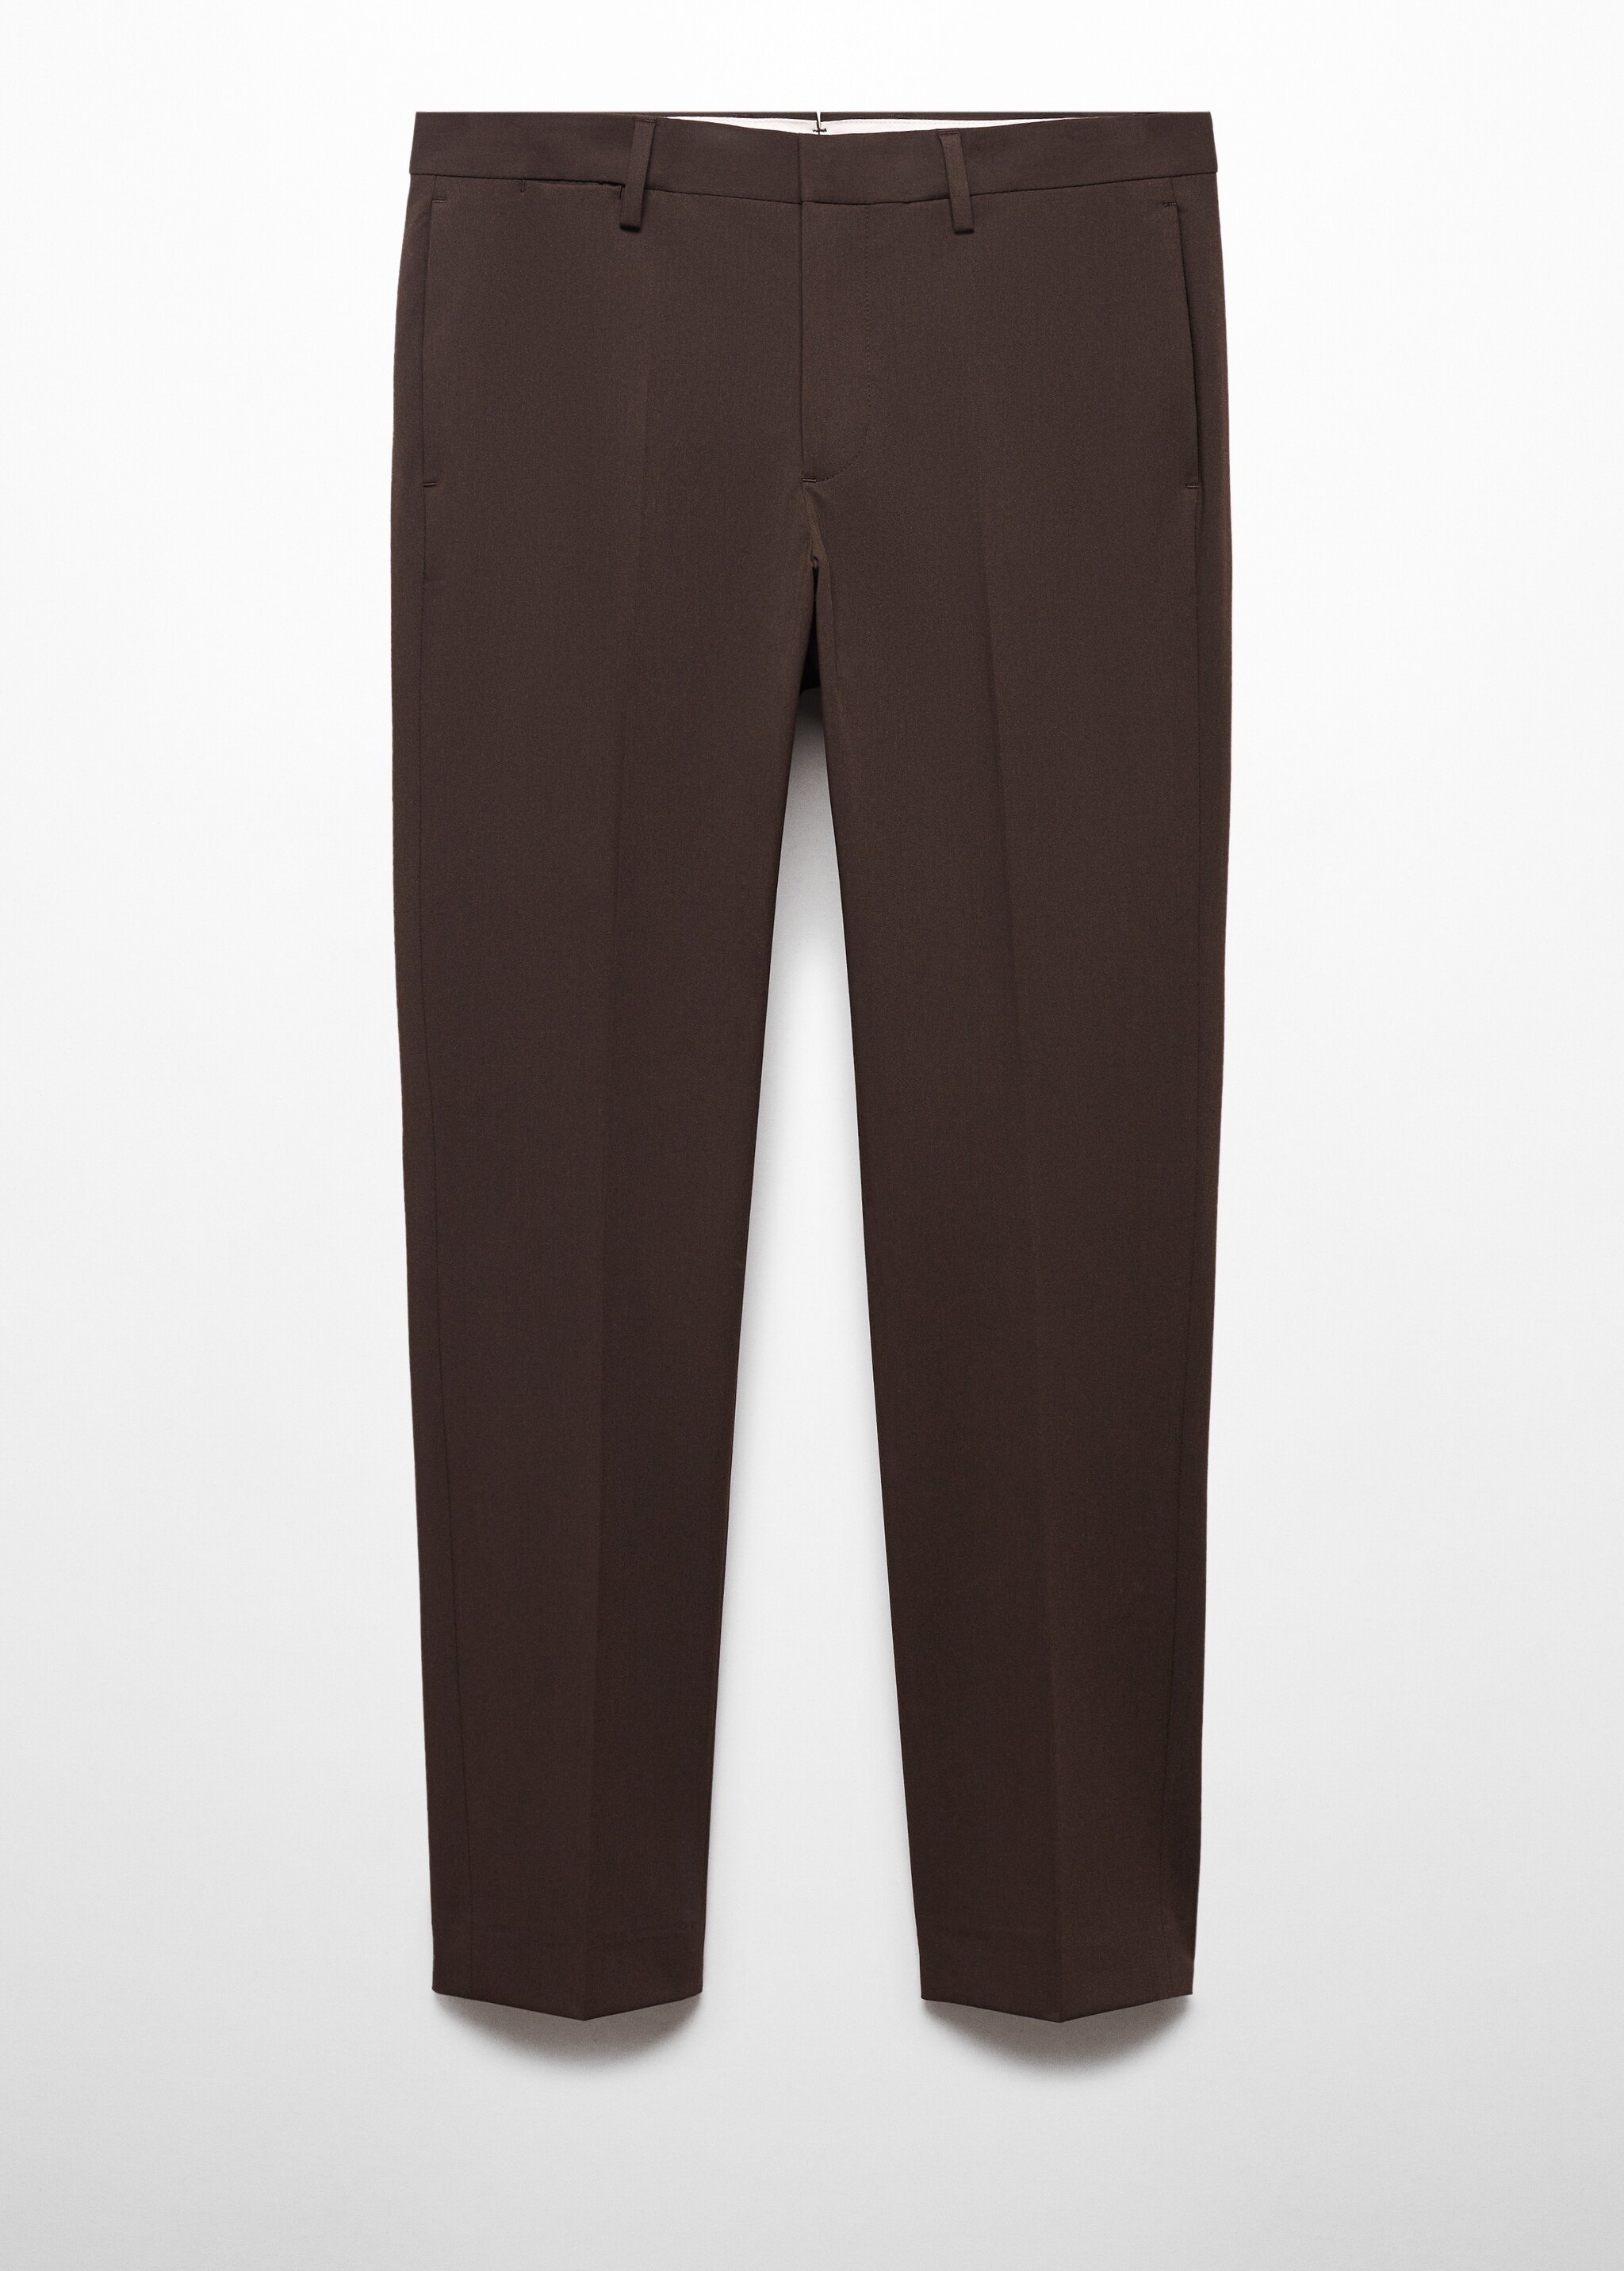 Костюмные брюки super slim fit из ткани стретч - Изделие без модели